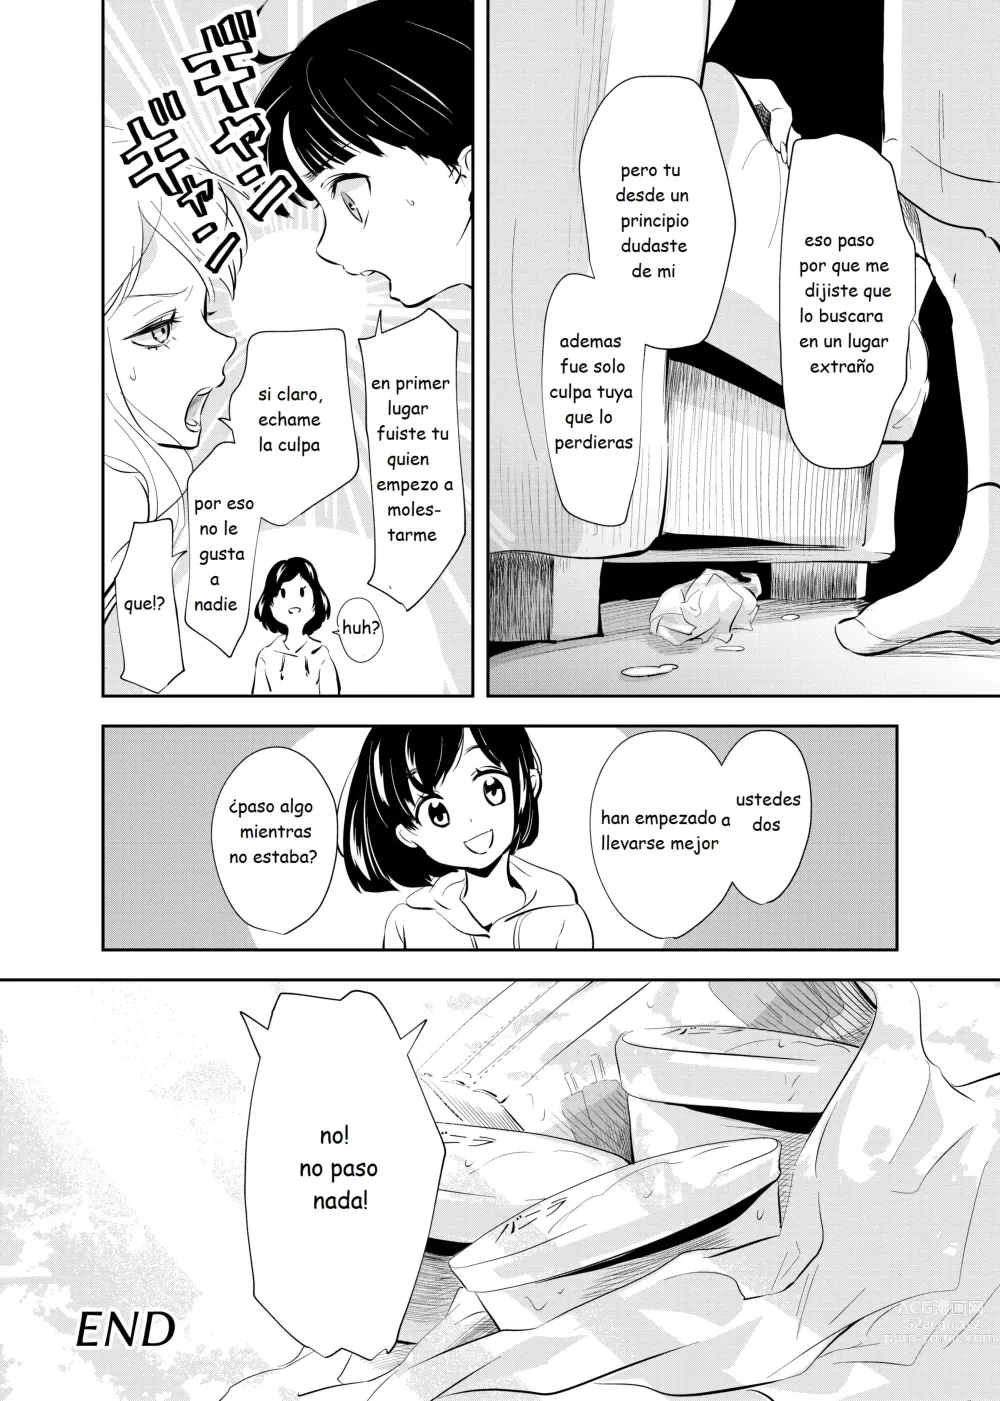 Page 37 of doujinshi Despues de la escuela